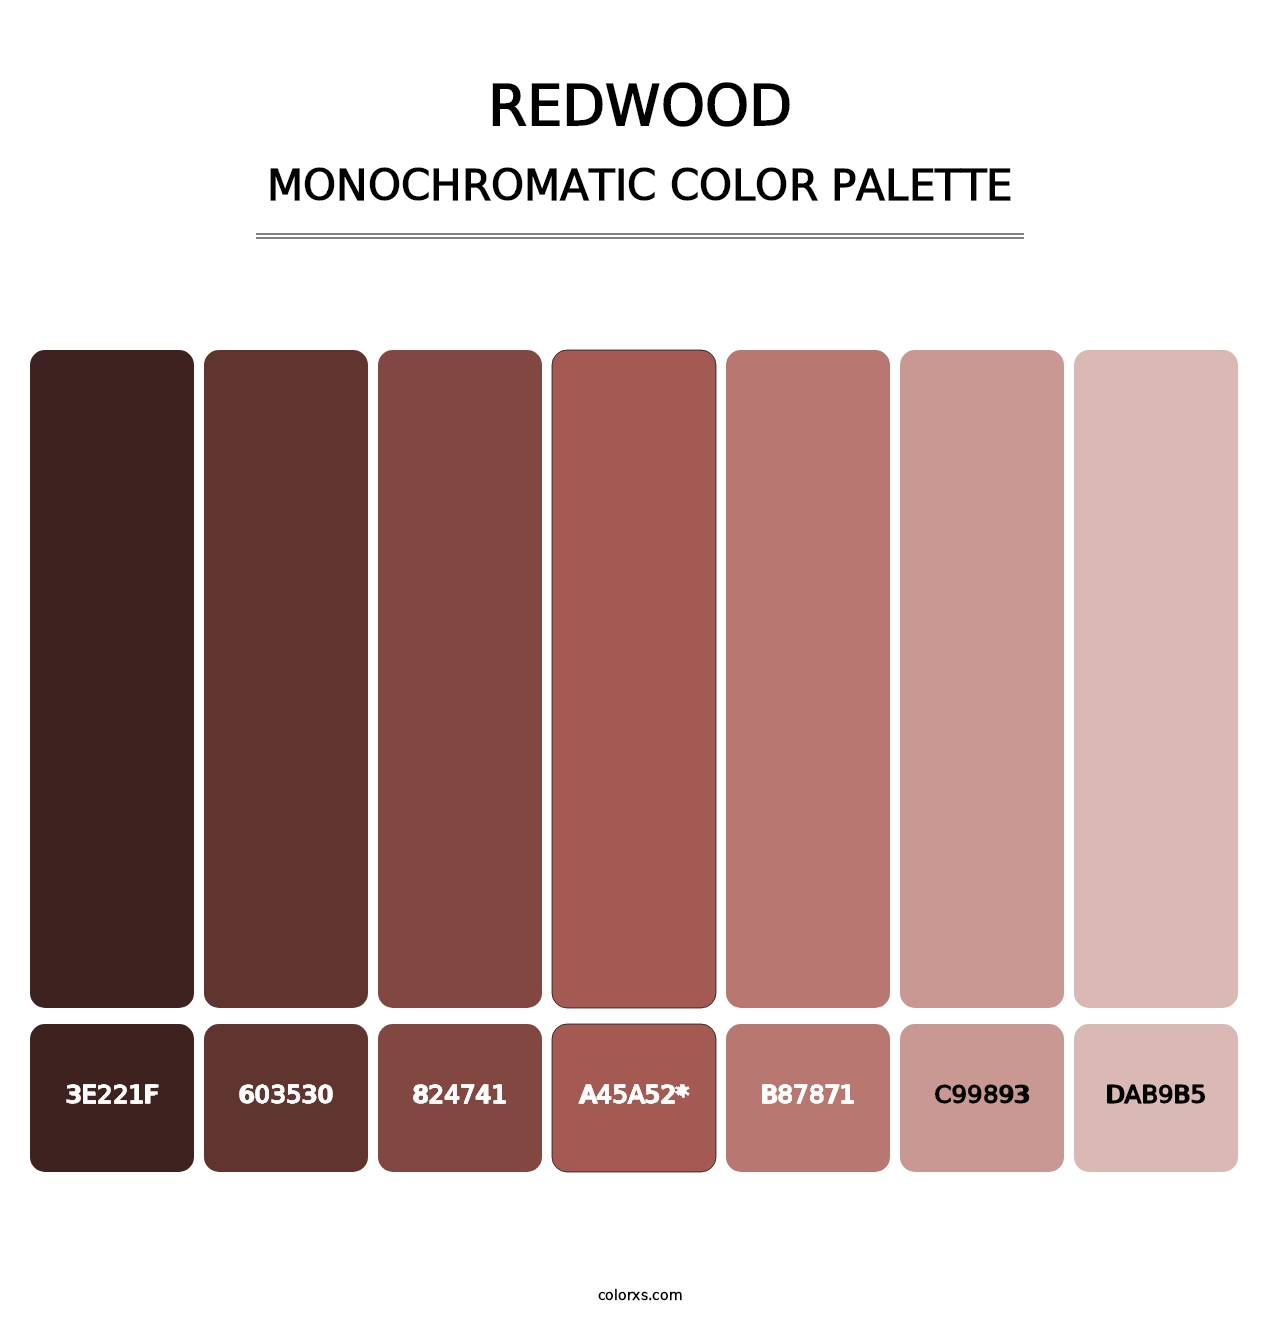 Redwood - Monochromatic Color Palette